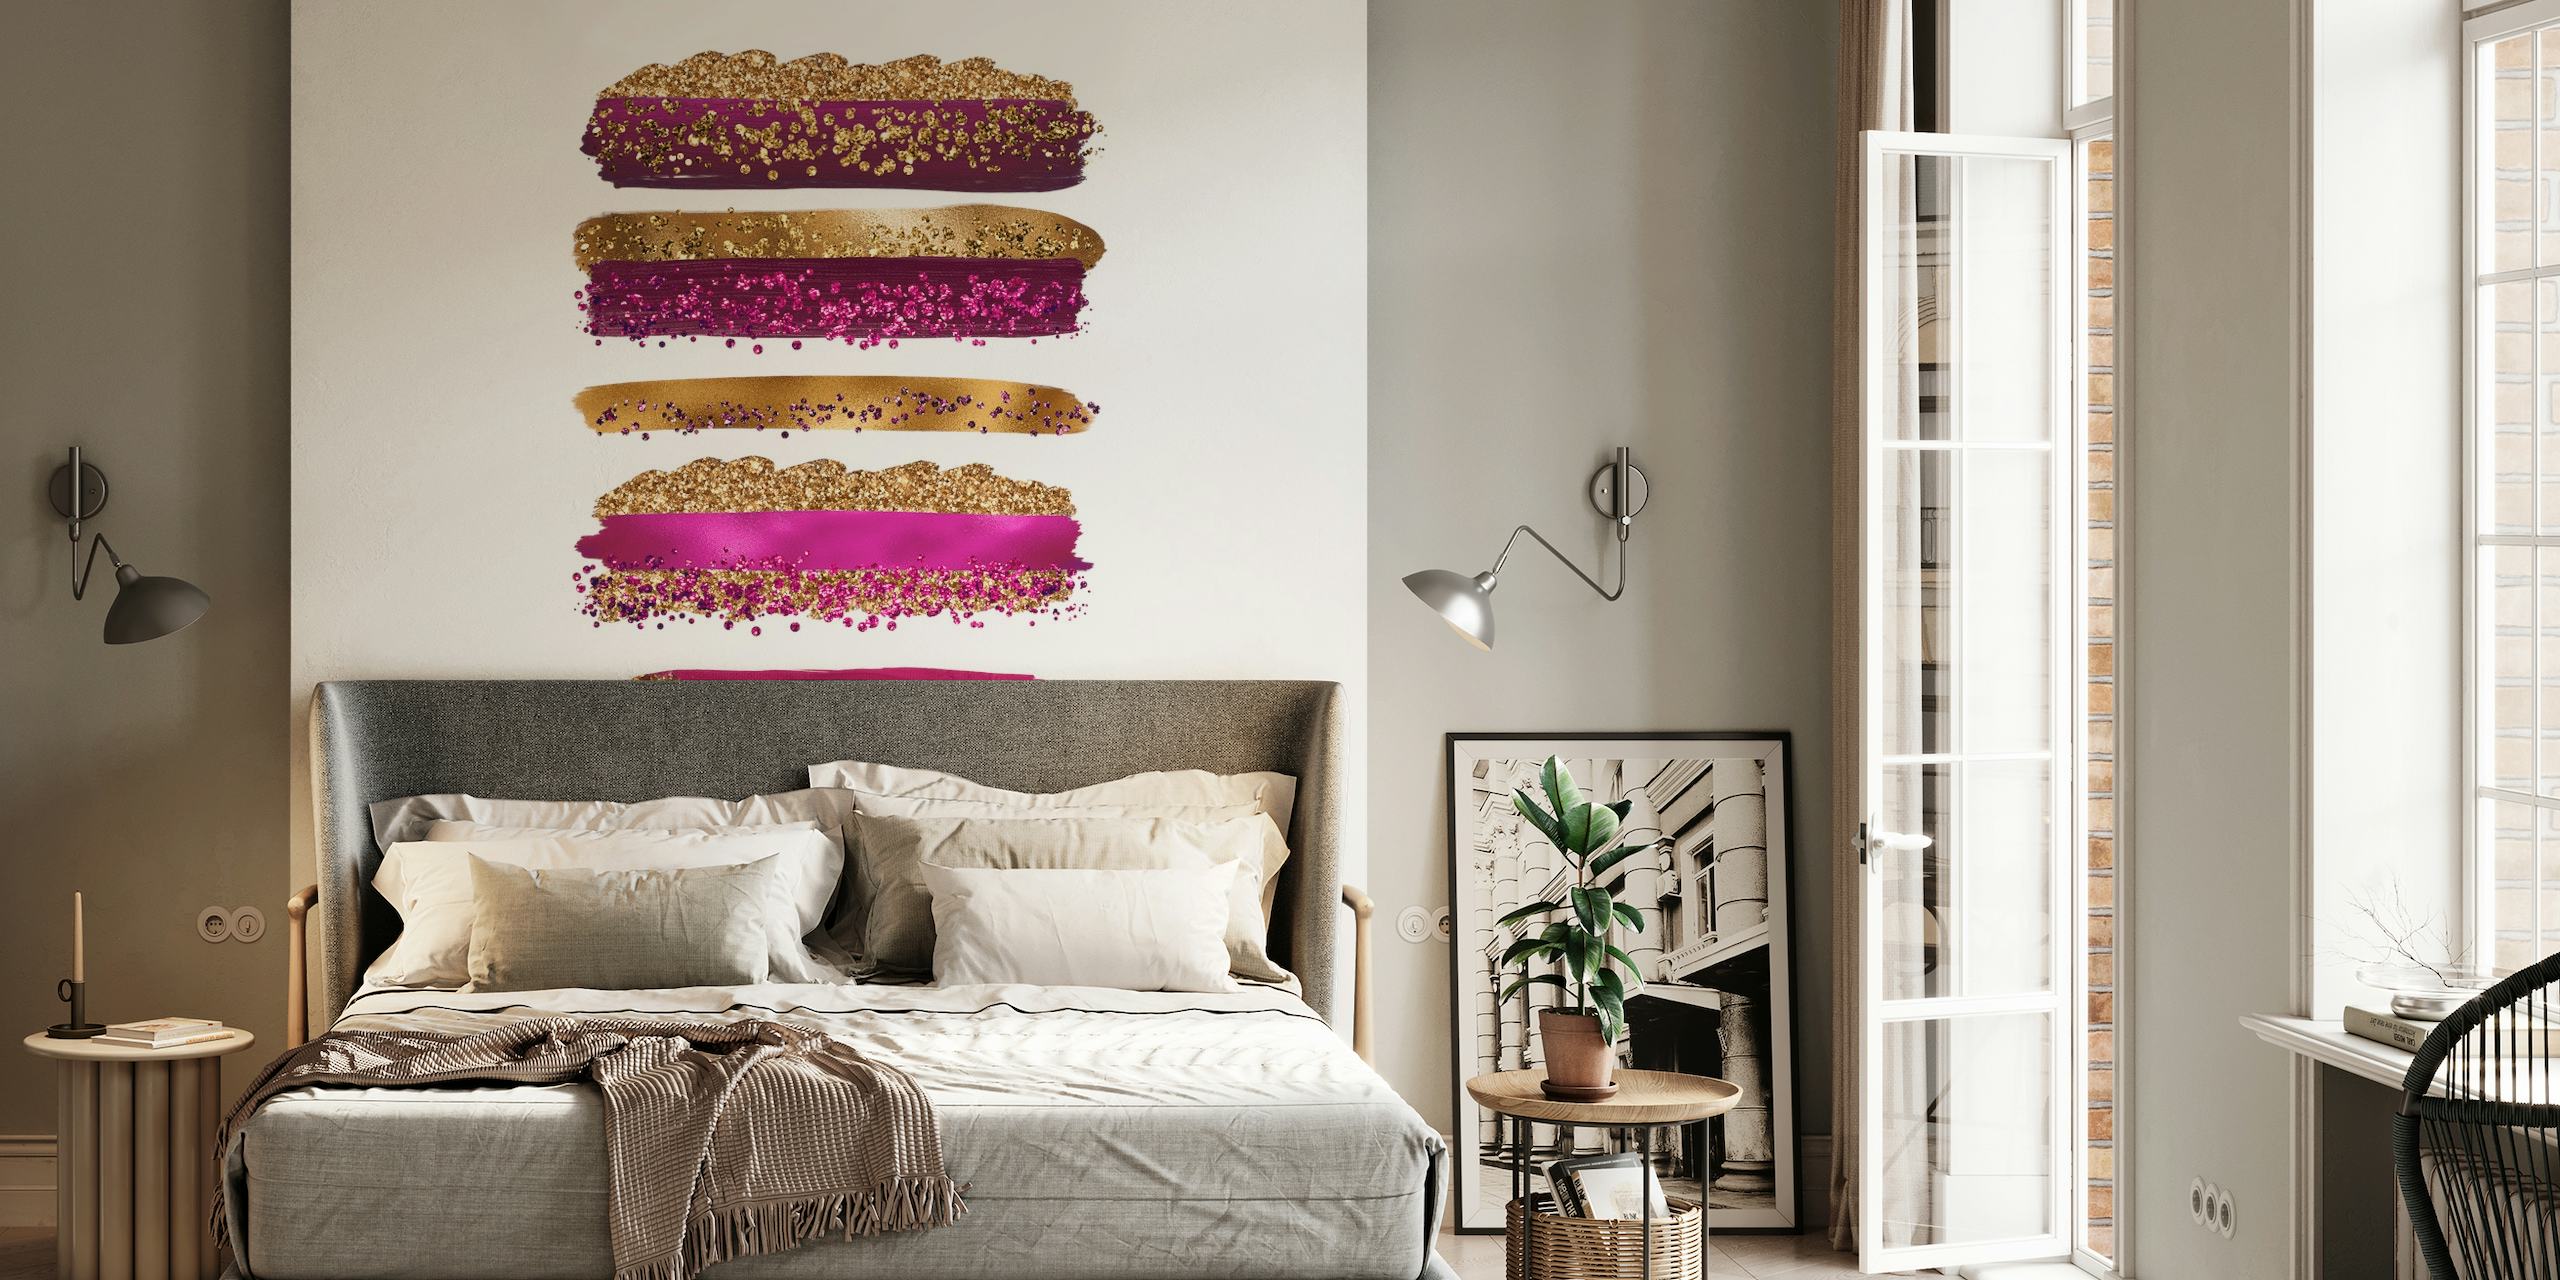 Fotomural vinílico de parede com traços de metal roxo dourado e texturas cintilantes